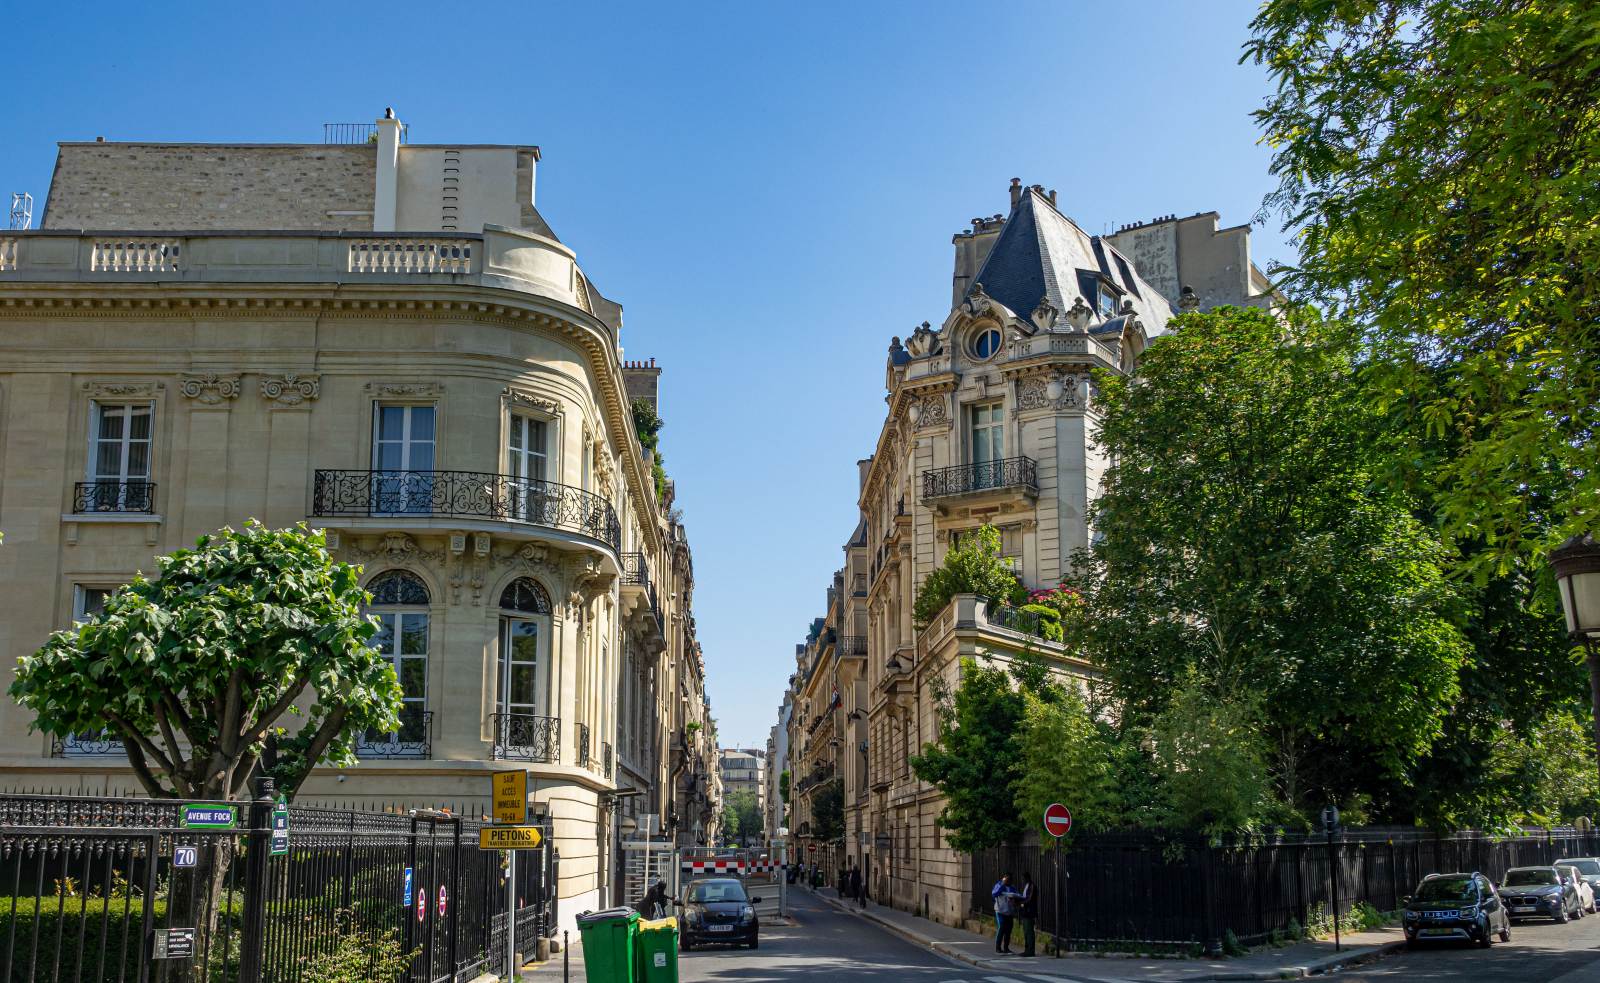 Typisch Pariser Architektur in form eines schnen und anspruchsvollen Wohnhaus in der inneren Stadtgebiet von Paris. Foto: Juni, 2023.